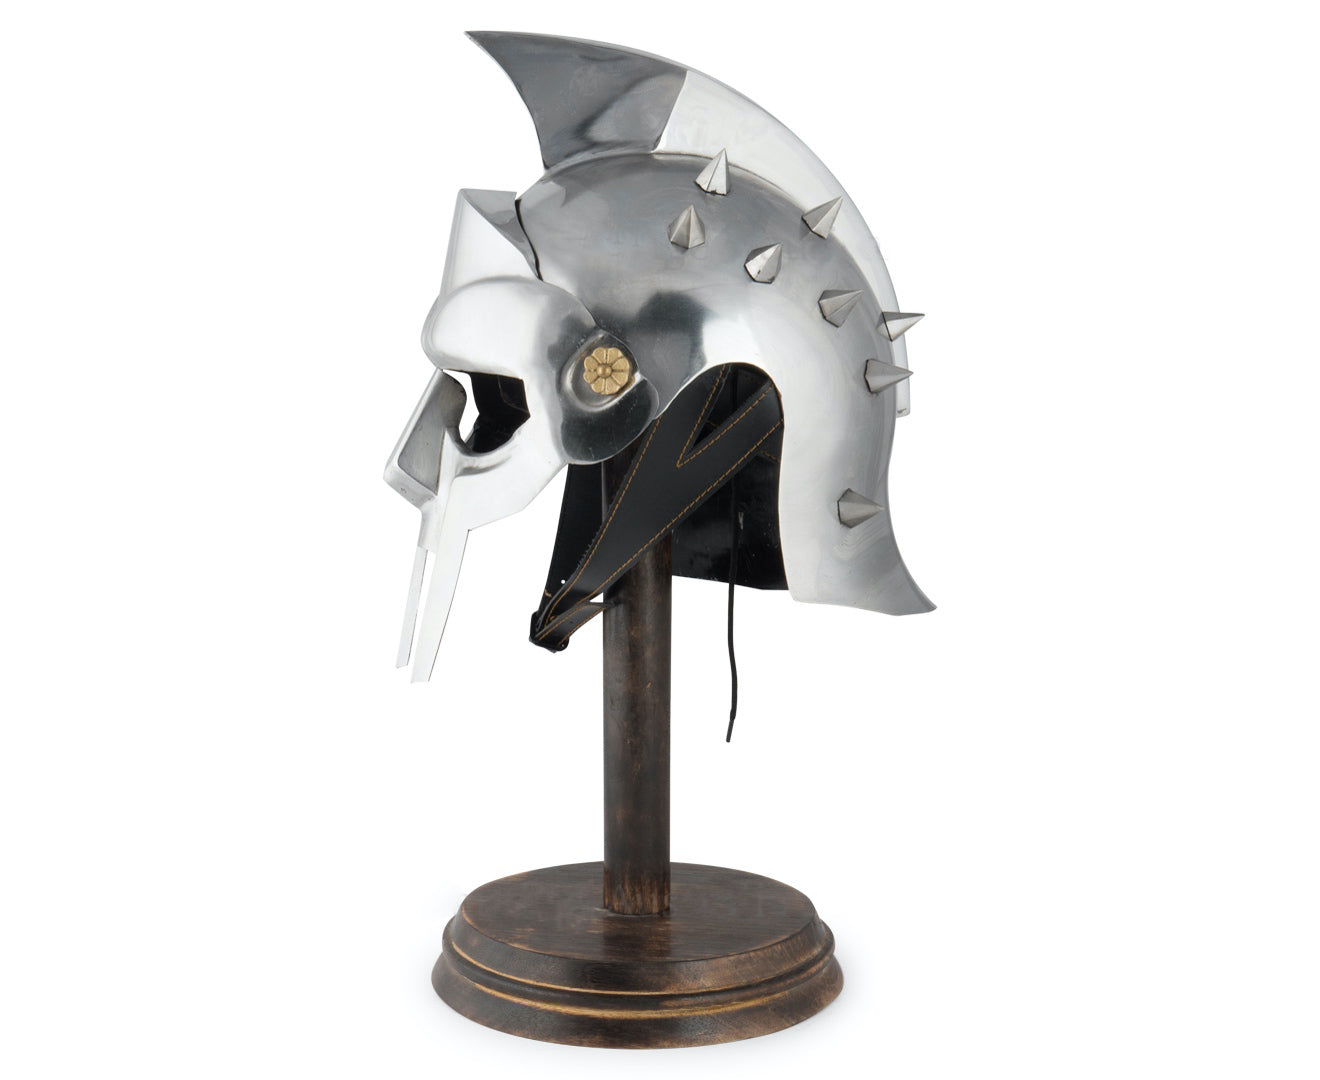 Gladiator Helmet (Maximus Decimus Meridius)